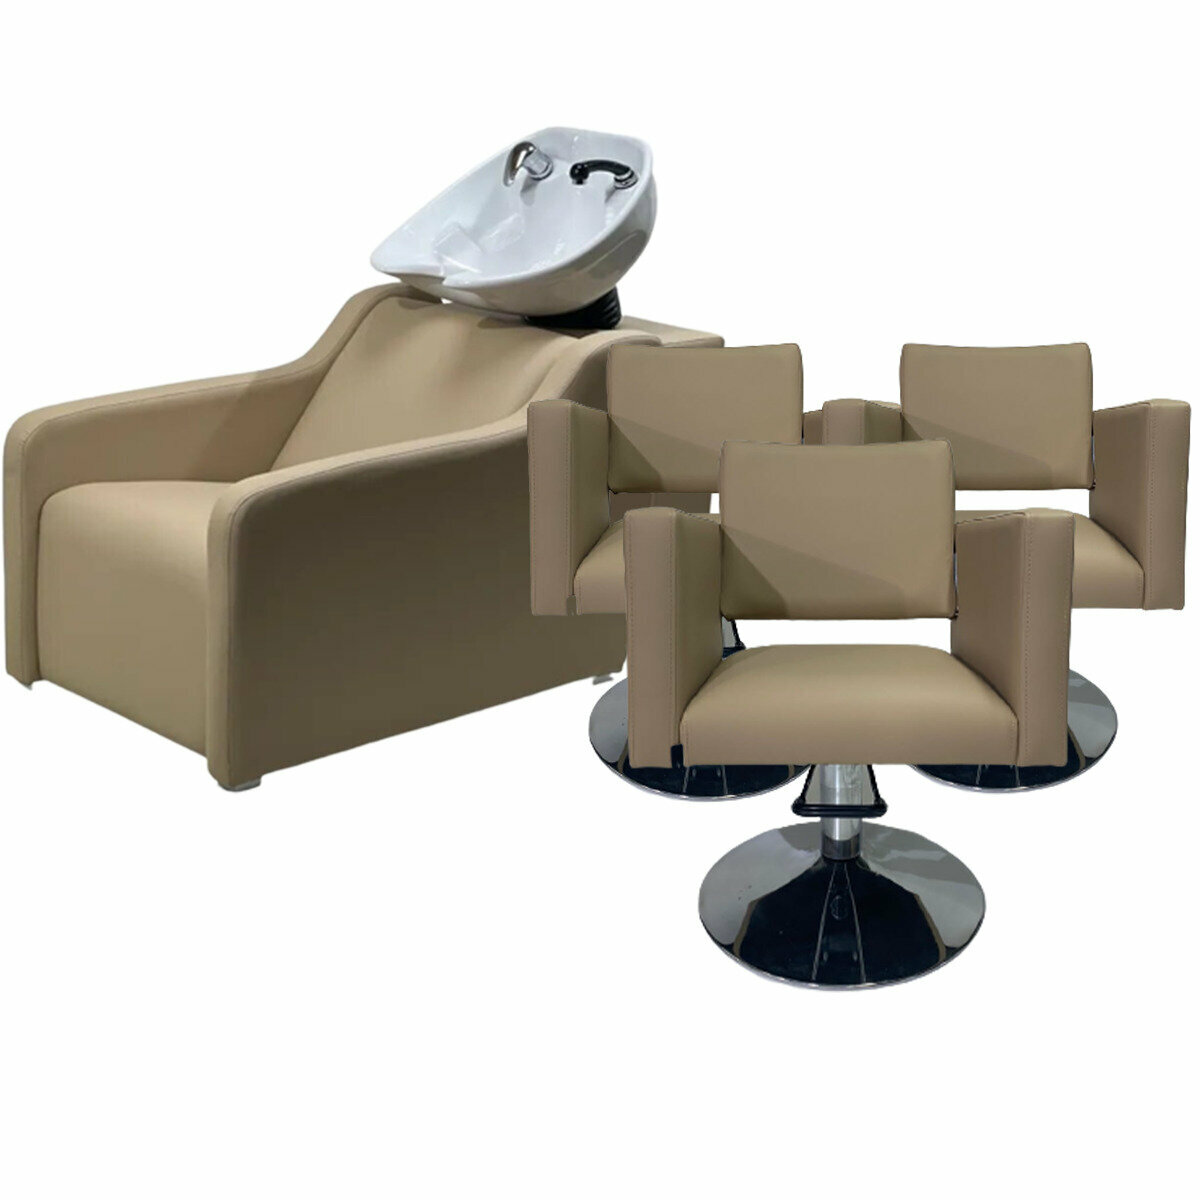 Парикмахерский комплект "Groan", Бежевый, 3 кресла гидравлика диск, 1 мойка глубокая белая раковина